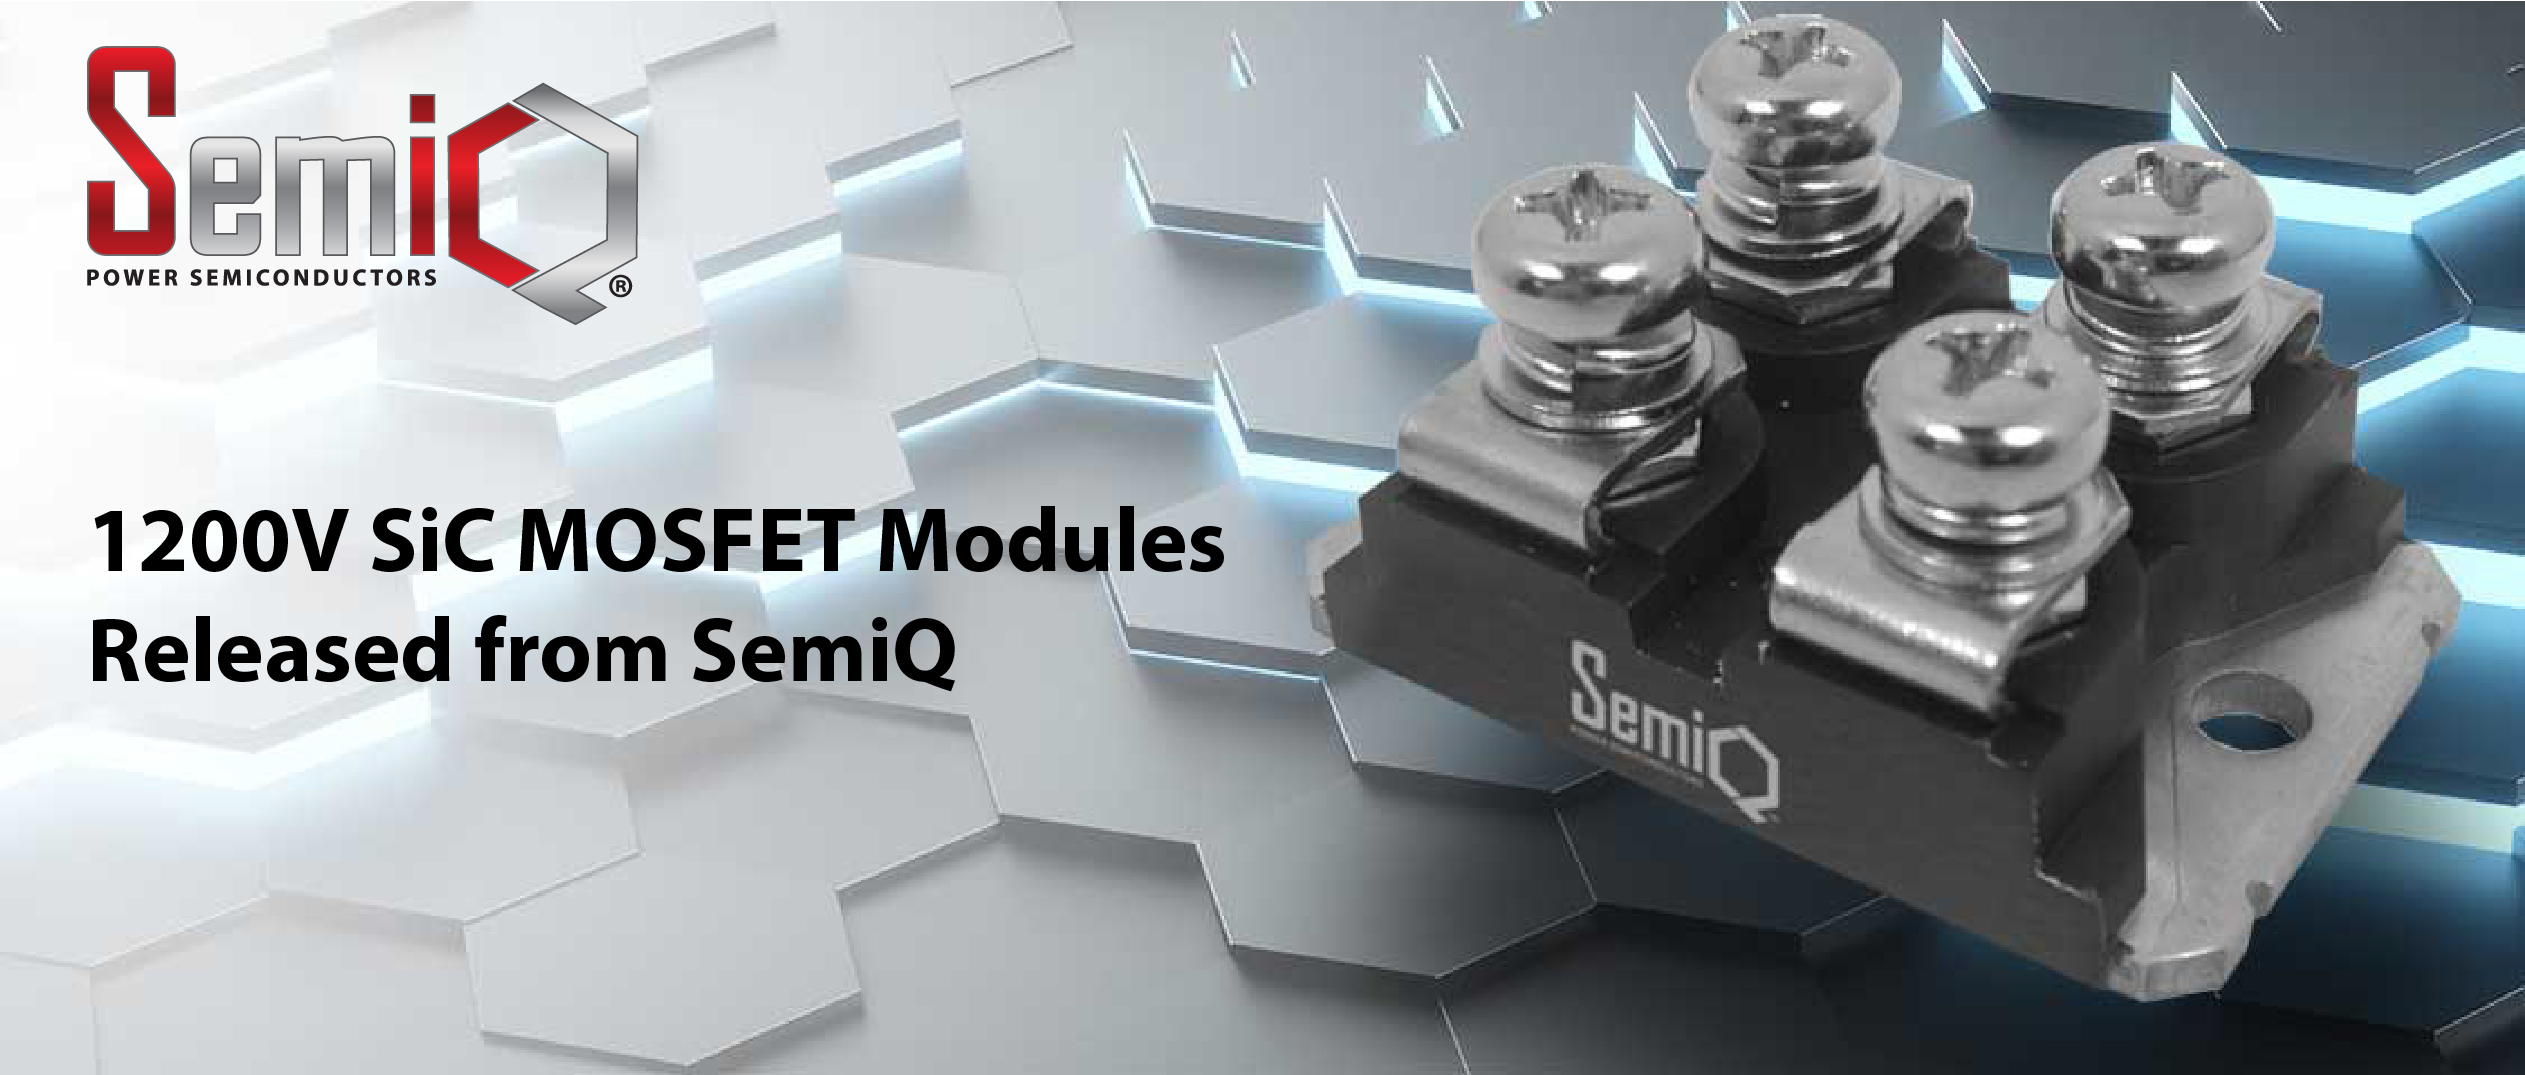 SemiQ Launches 1200V 80mΩ Silicon Carbide MOSFET Modules